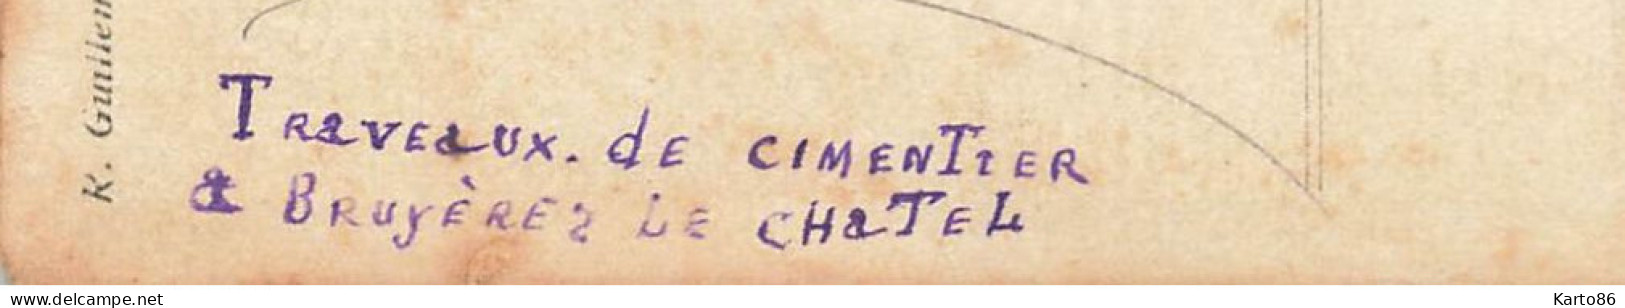 Bruyères Le Chatel * RARE 2 Cartes Photos 1907/1908 * Travaux De Cimentier ! * Villa Manoir Château Ouvriers - Bruyeres Le Chatel